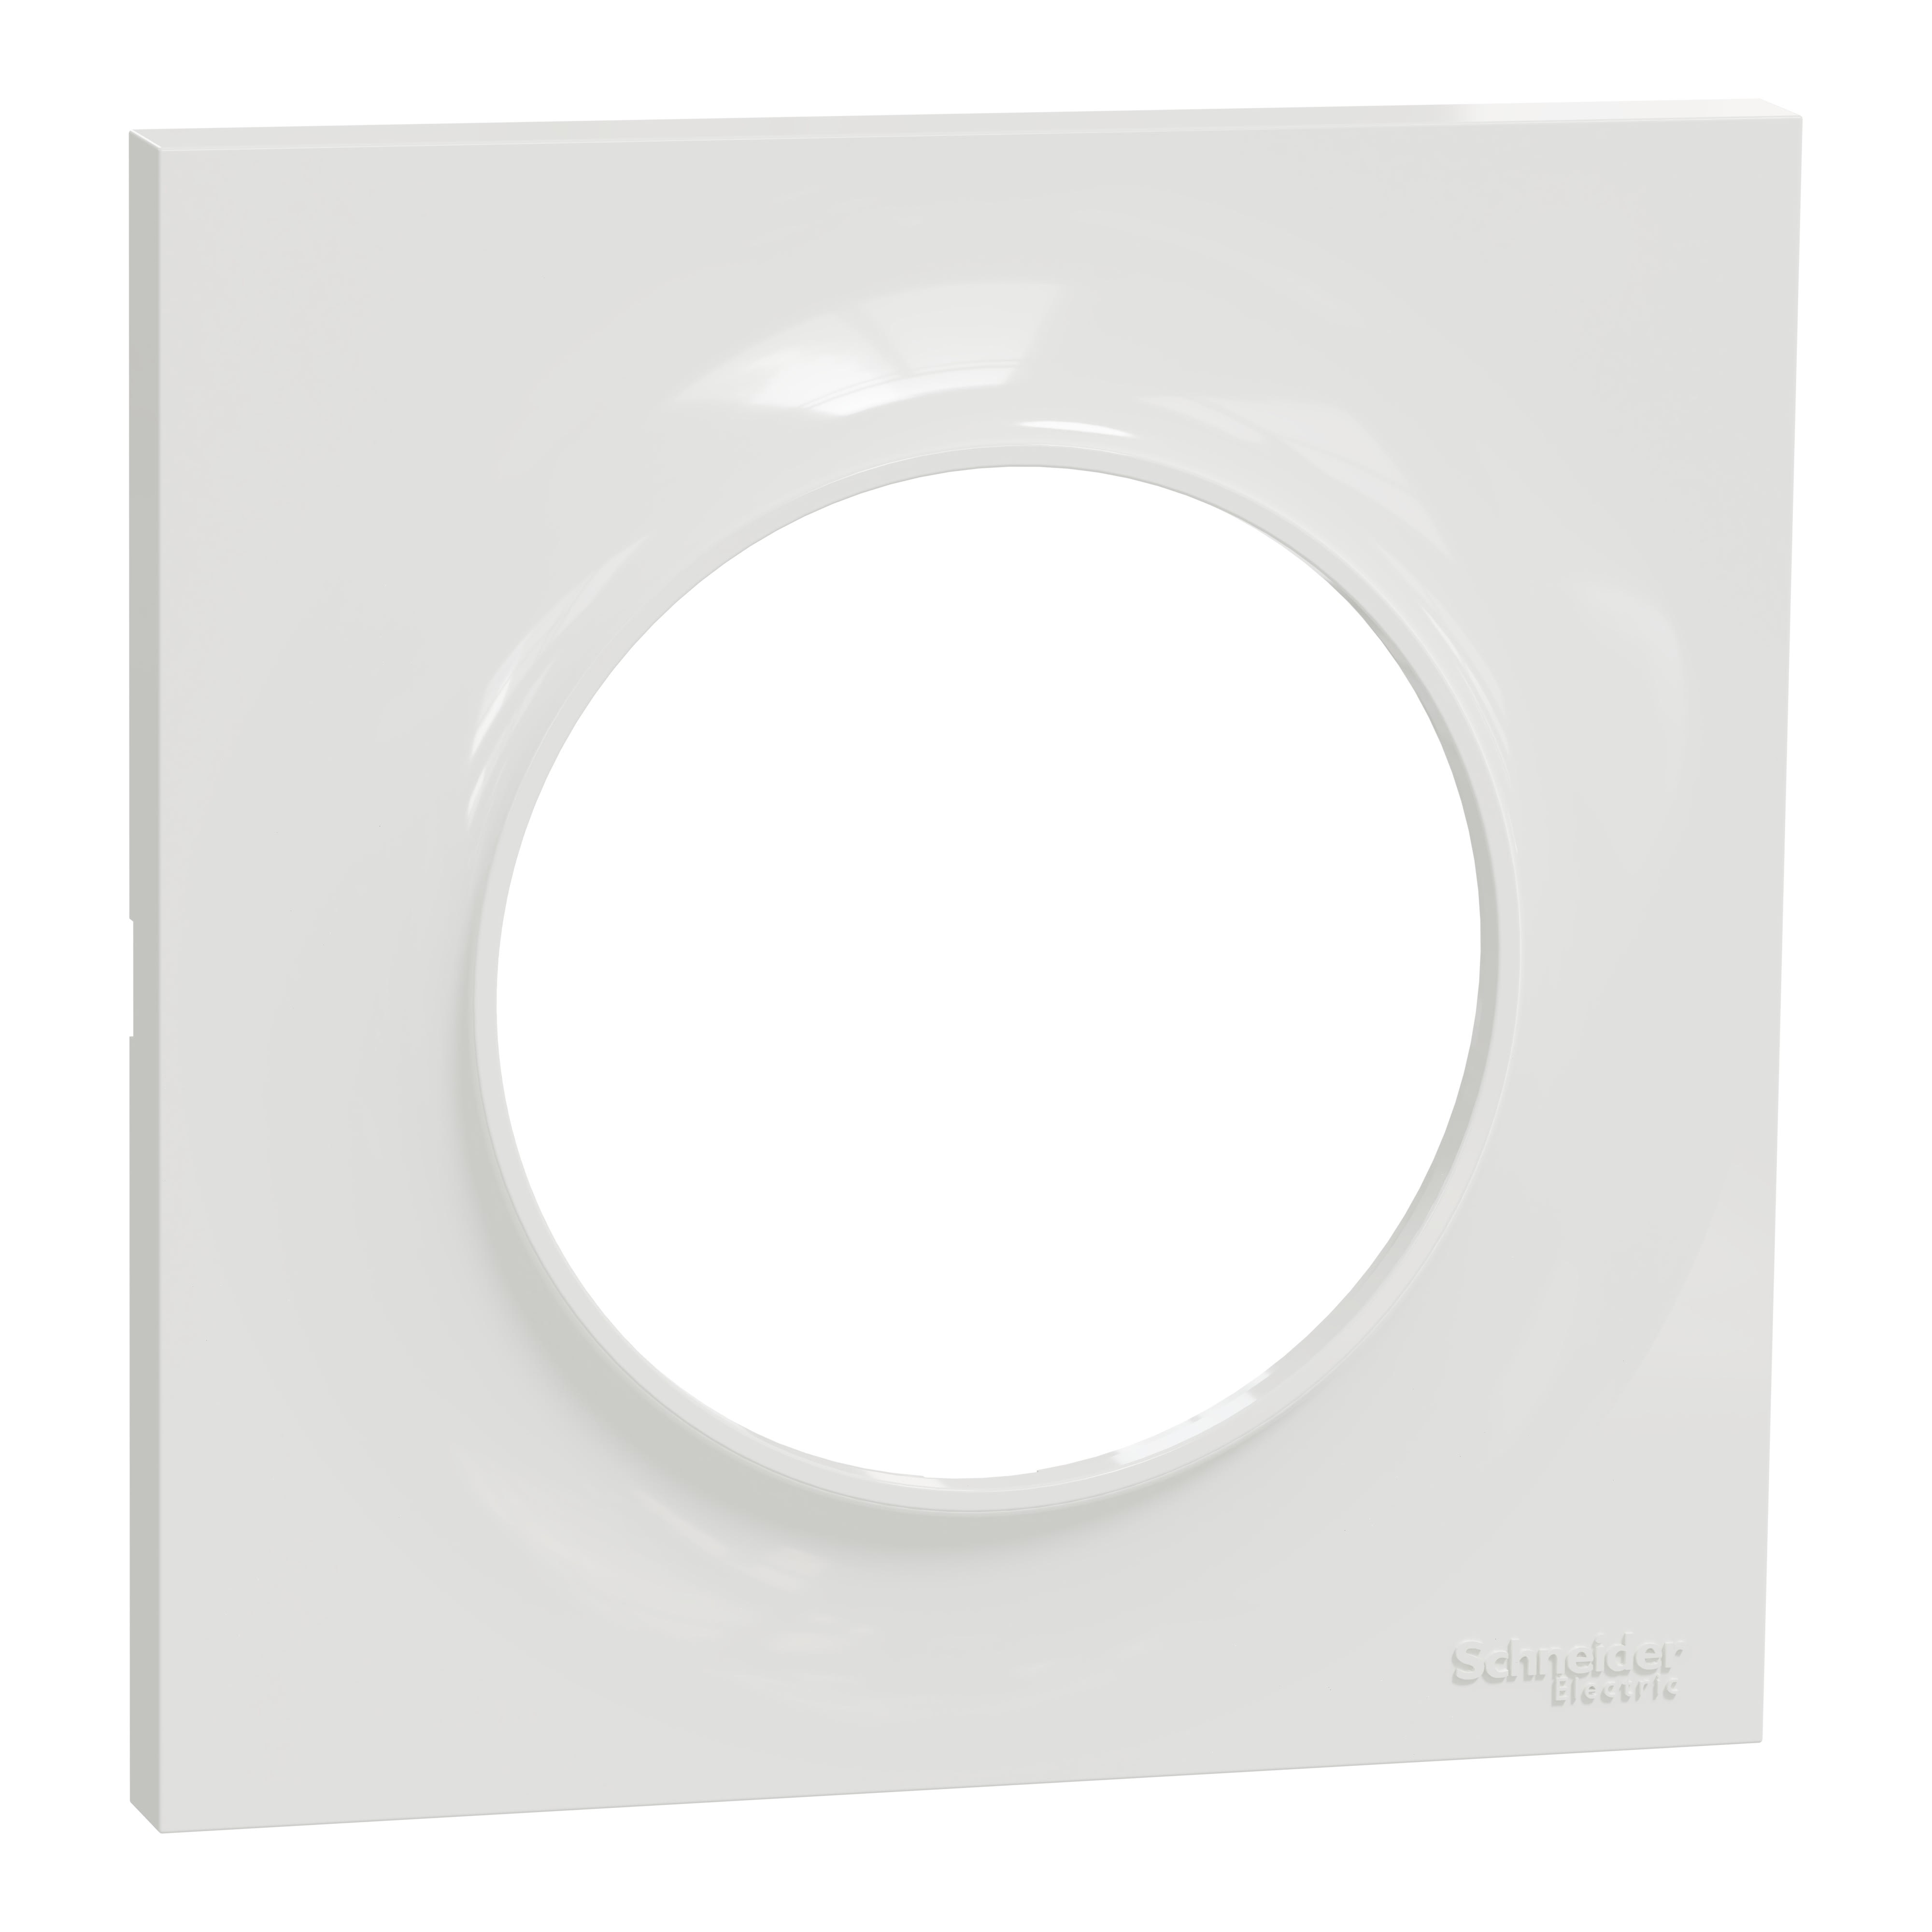 Plaque pour interrupteur Schneider Electric, 1 poste, Blanc, Aluminium